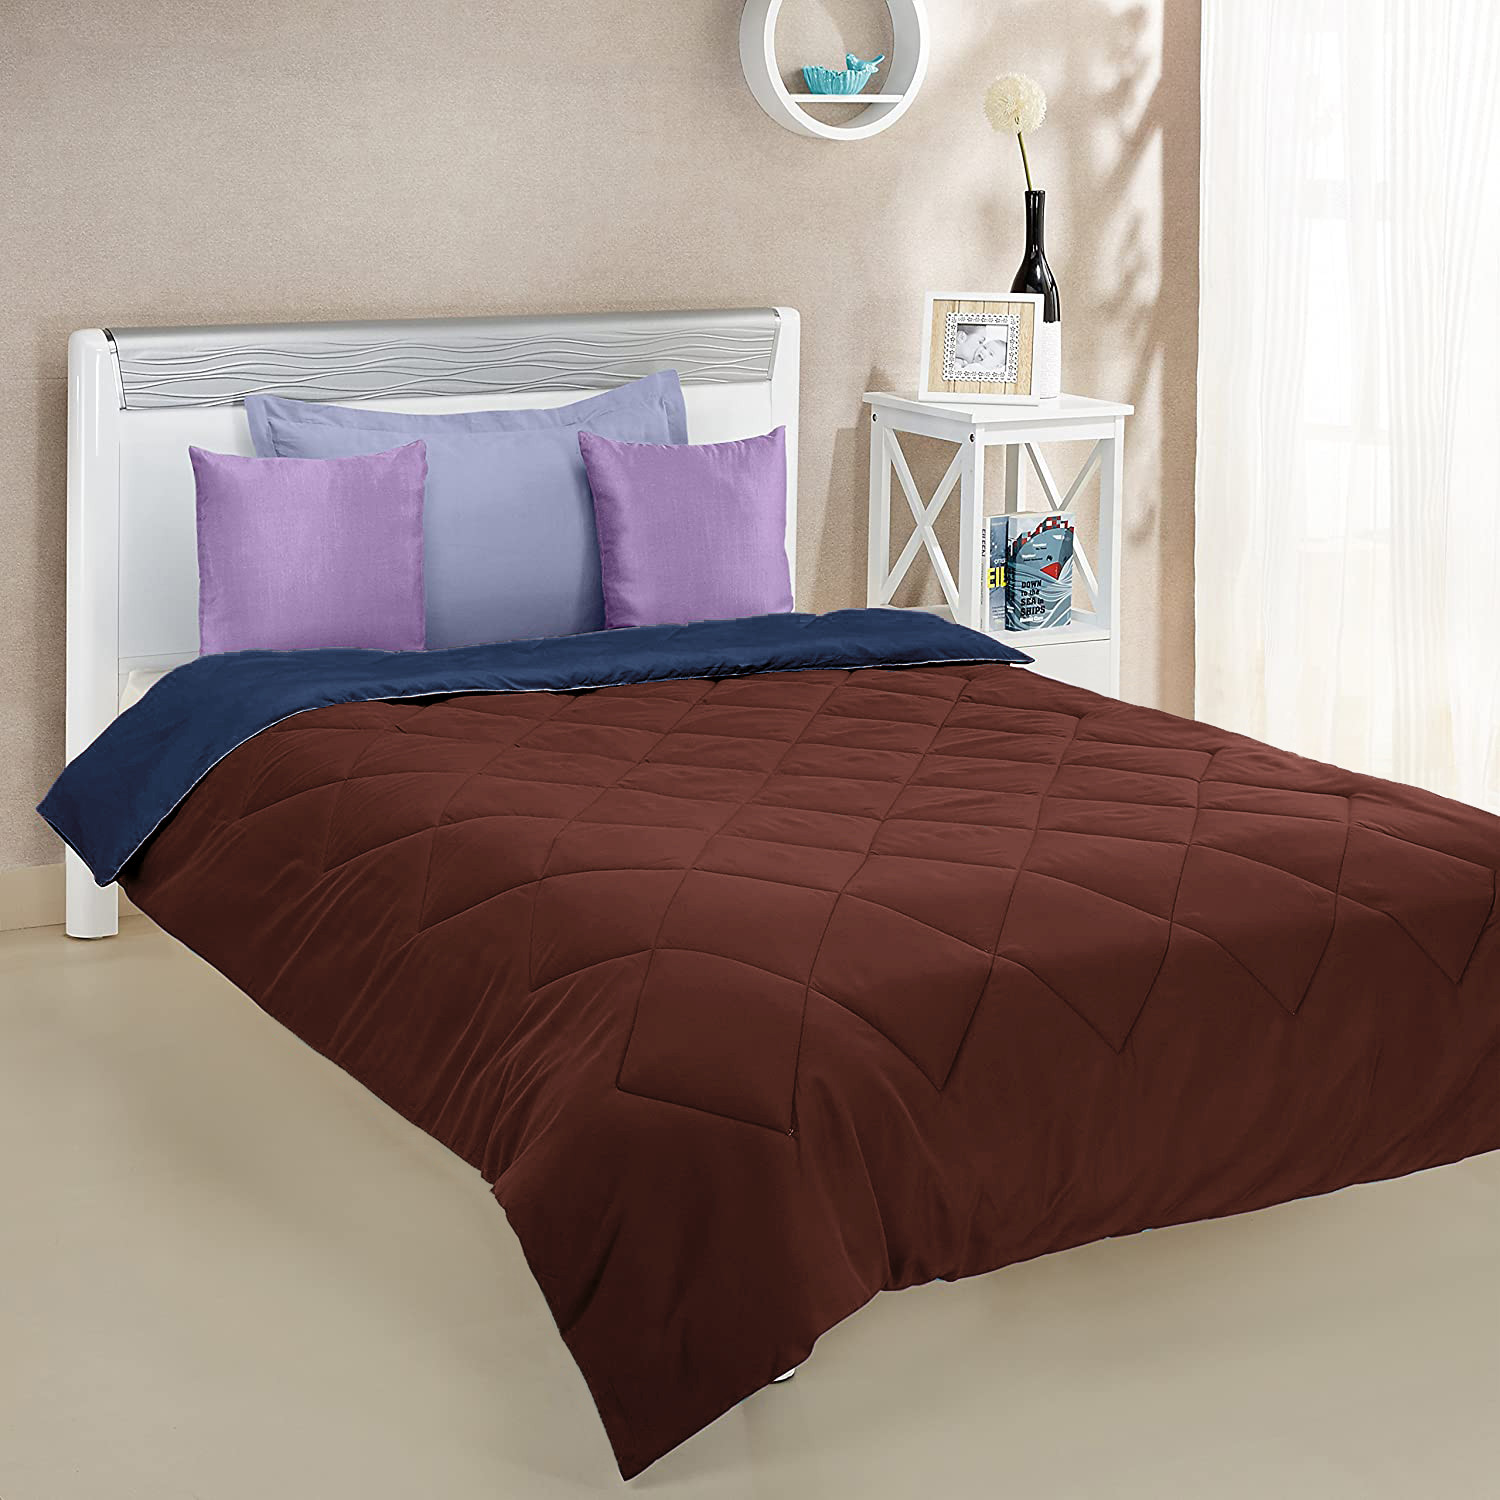 Kuber Industries Comforter for Double Bed|Microfiber Winter Comforter for Double Bed|220 GSM Reversible Comforter|AC Quilt|Dohar|Blanket |Brown & Navy Blue